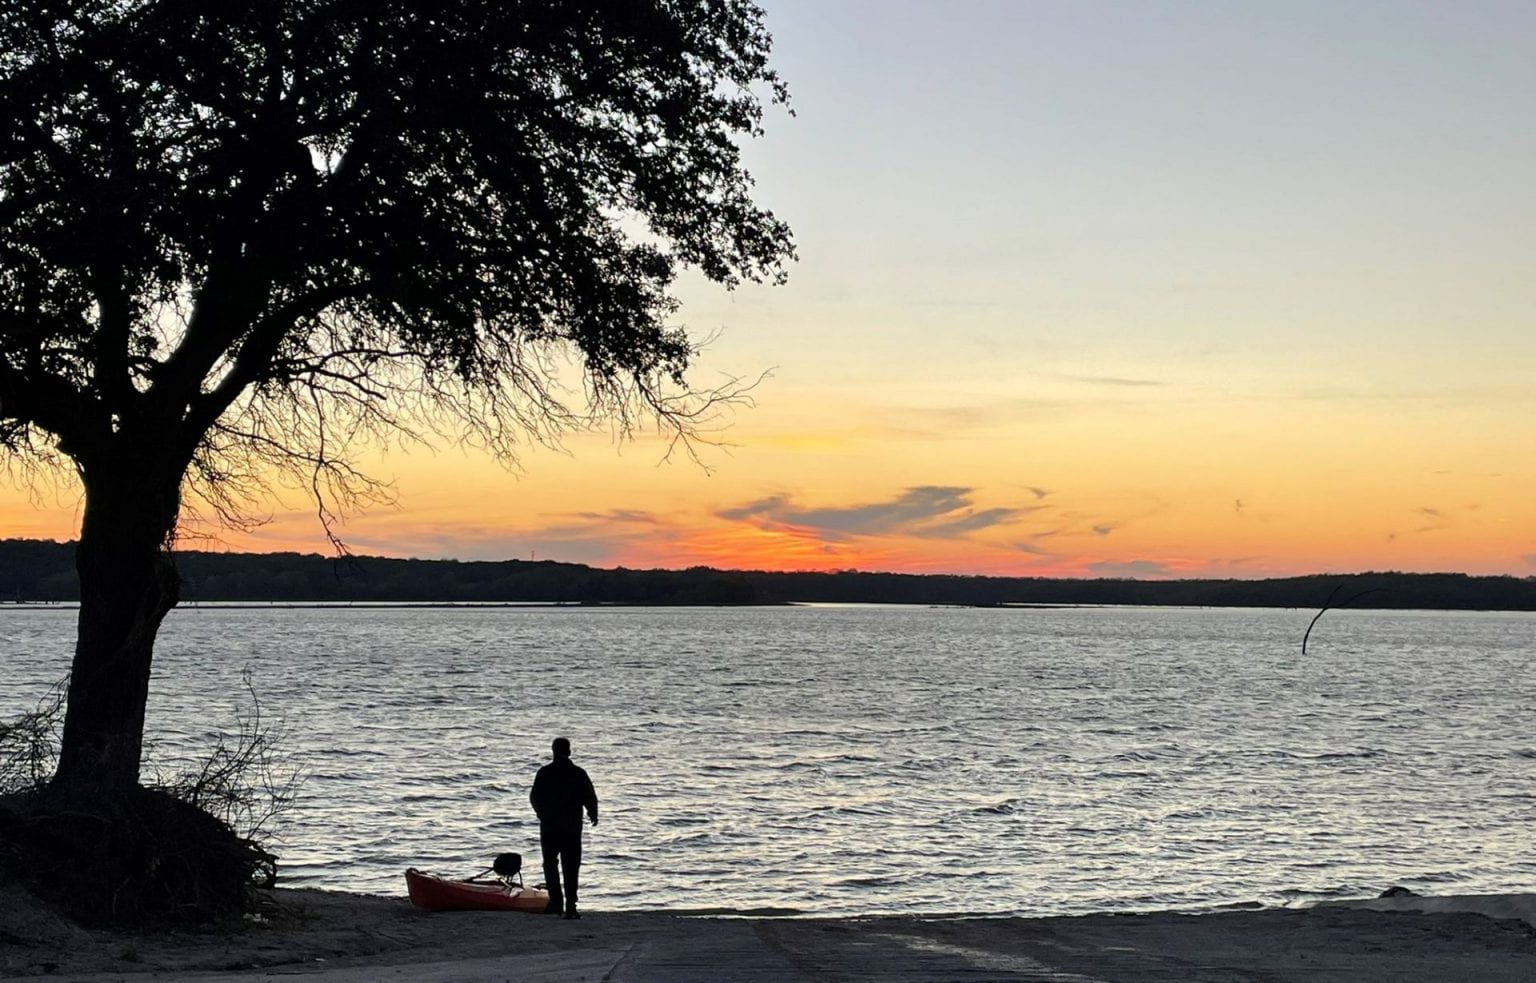 Lake Waco